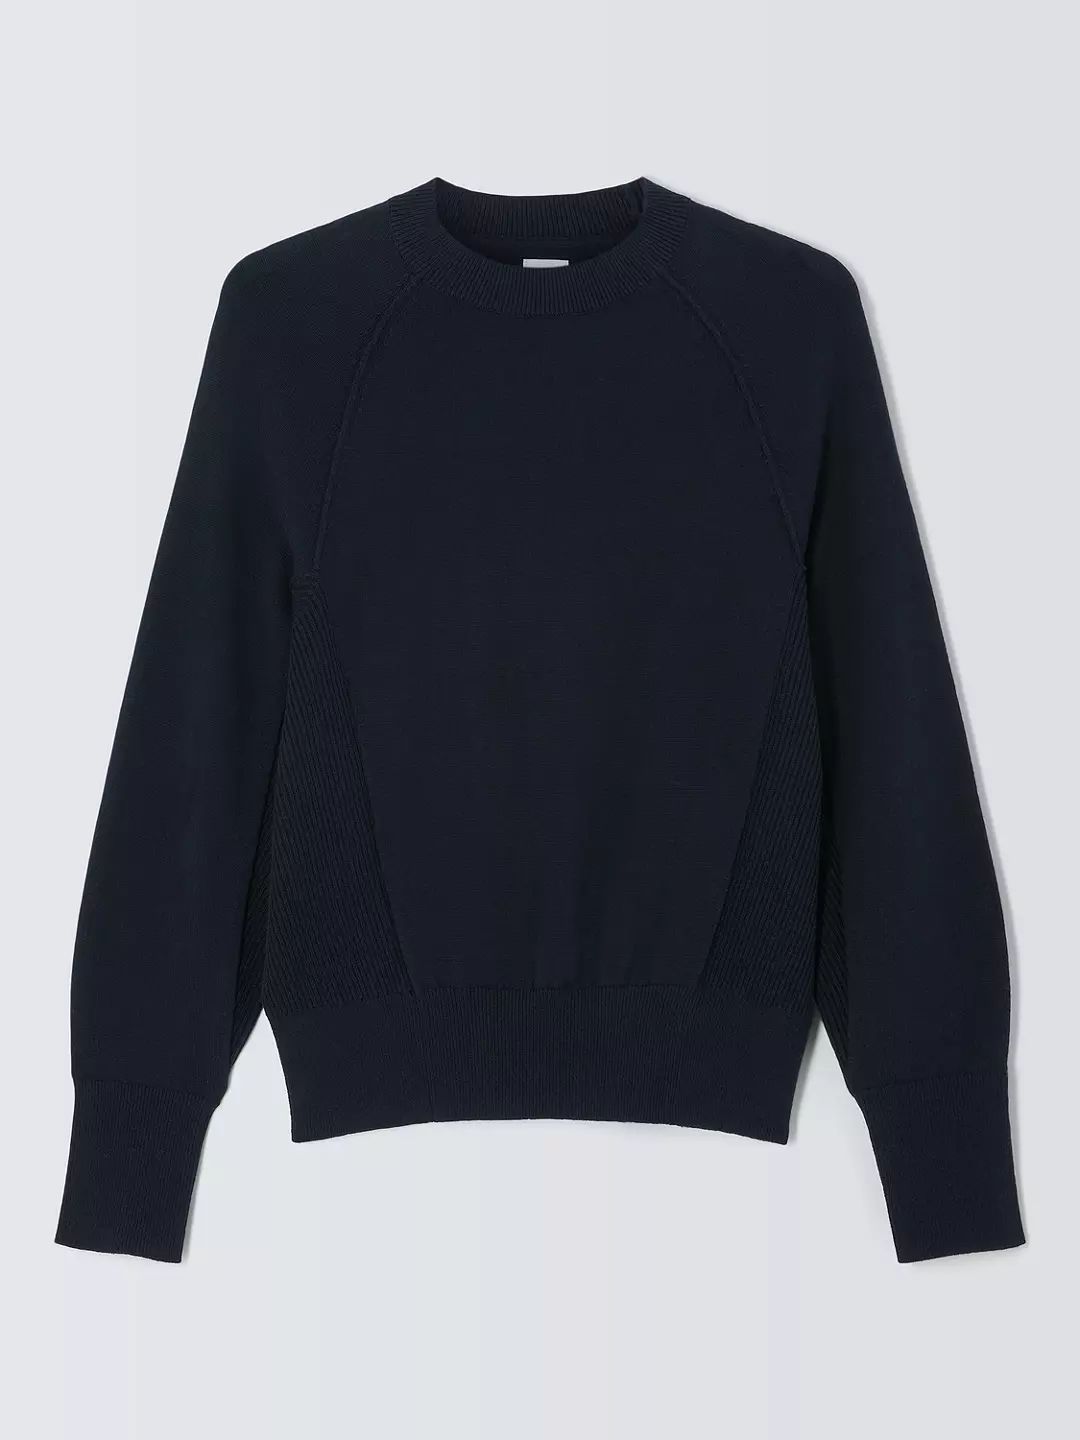 John Lewis Cotton Knitted Sweater, Navy | John Lewis (UK)